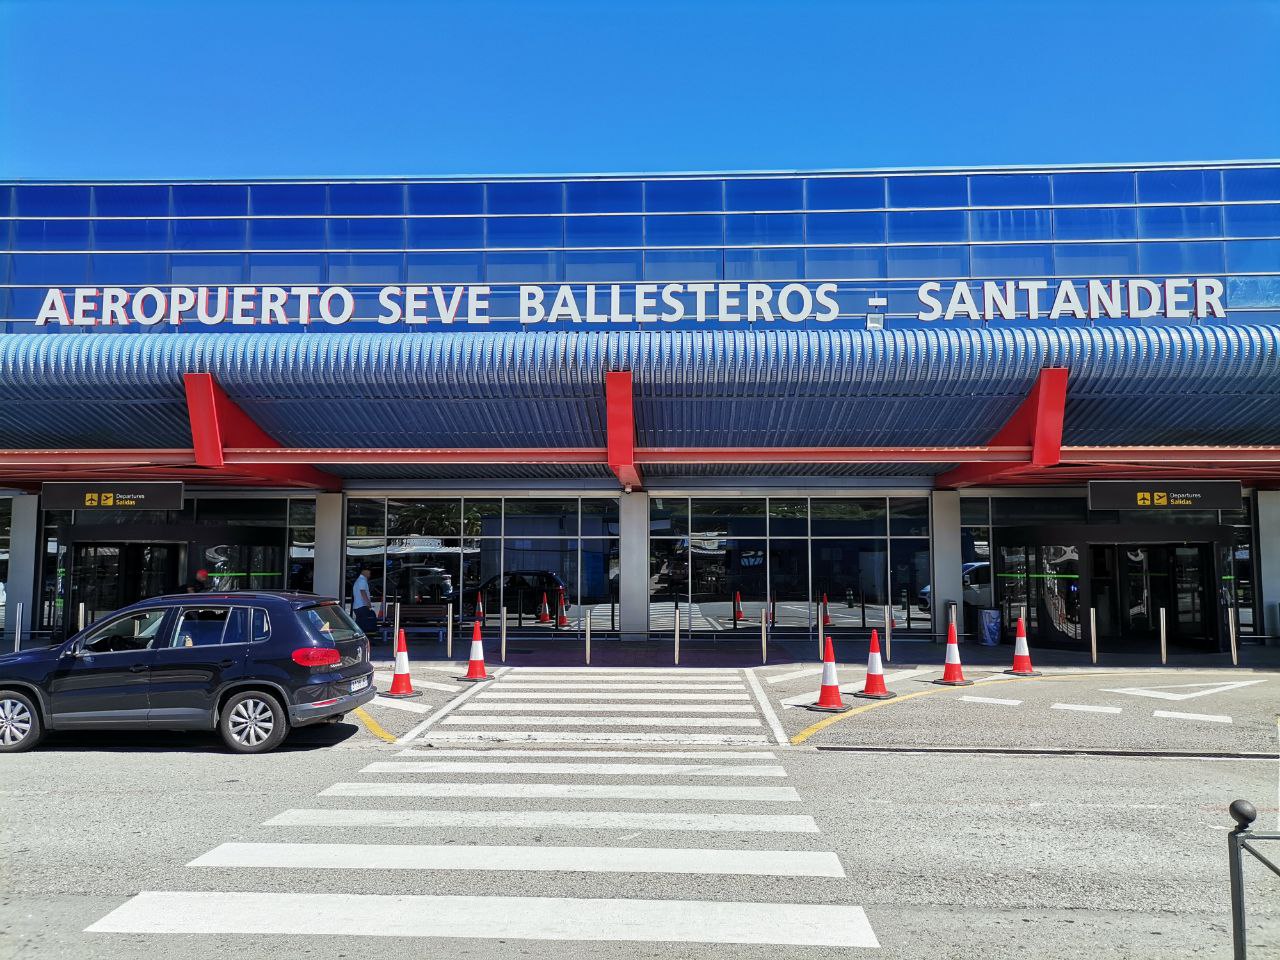 El Aeropuerto Seve Ballesteros – Santander Parayas cerró Julio de 2022 con un 3,4% más de Pasajeros que en 2019